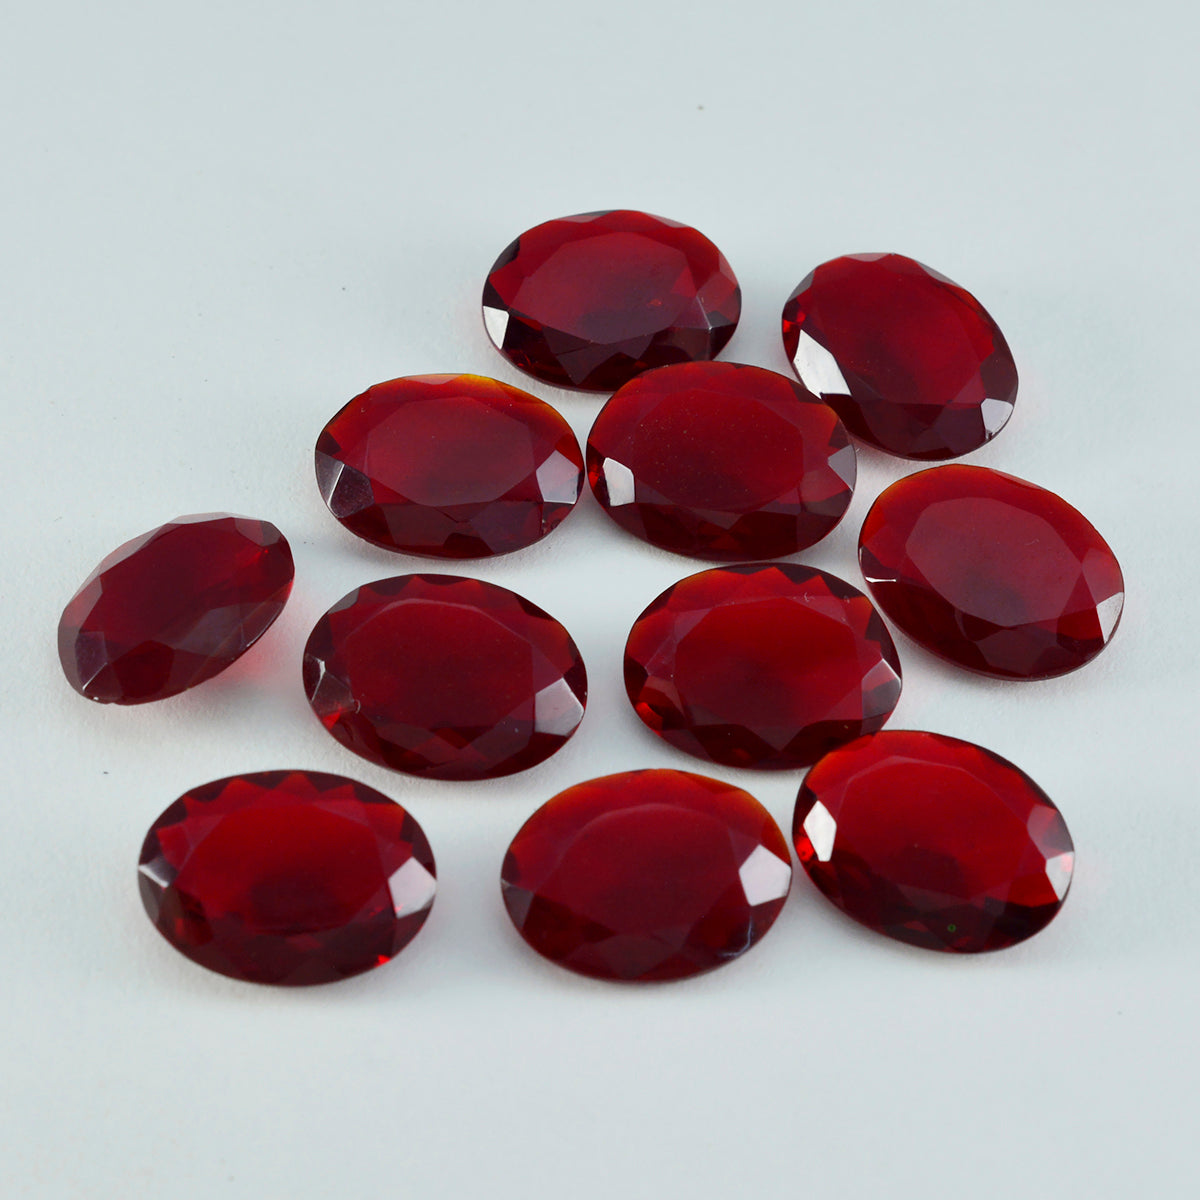 Riyogems 1 pieza rubí rojo cz facetado 10x14mm forma ovalada piedra suelta de calidad sorprendente